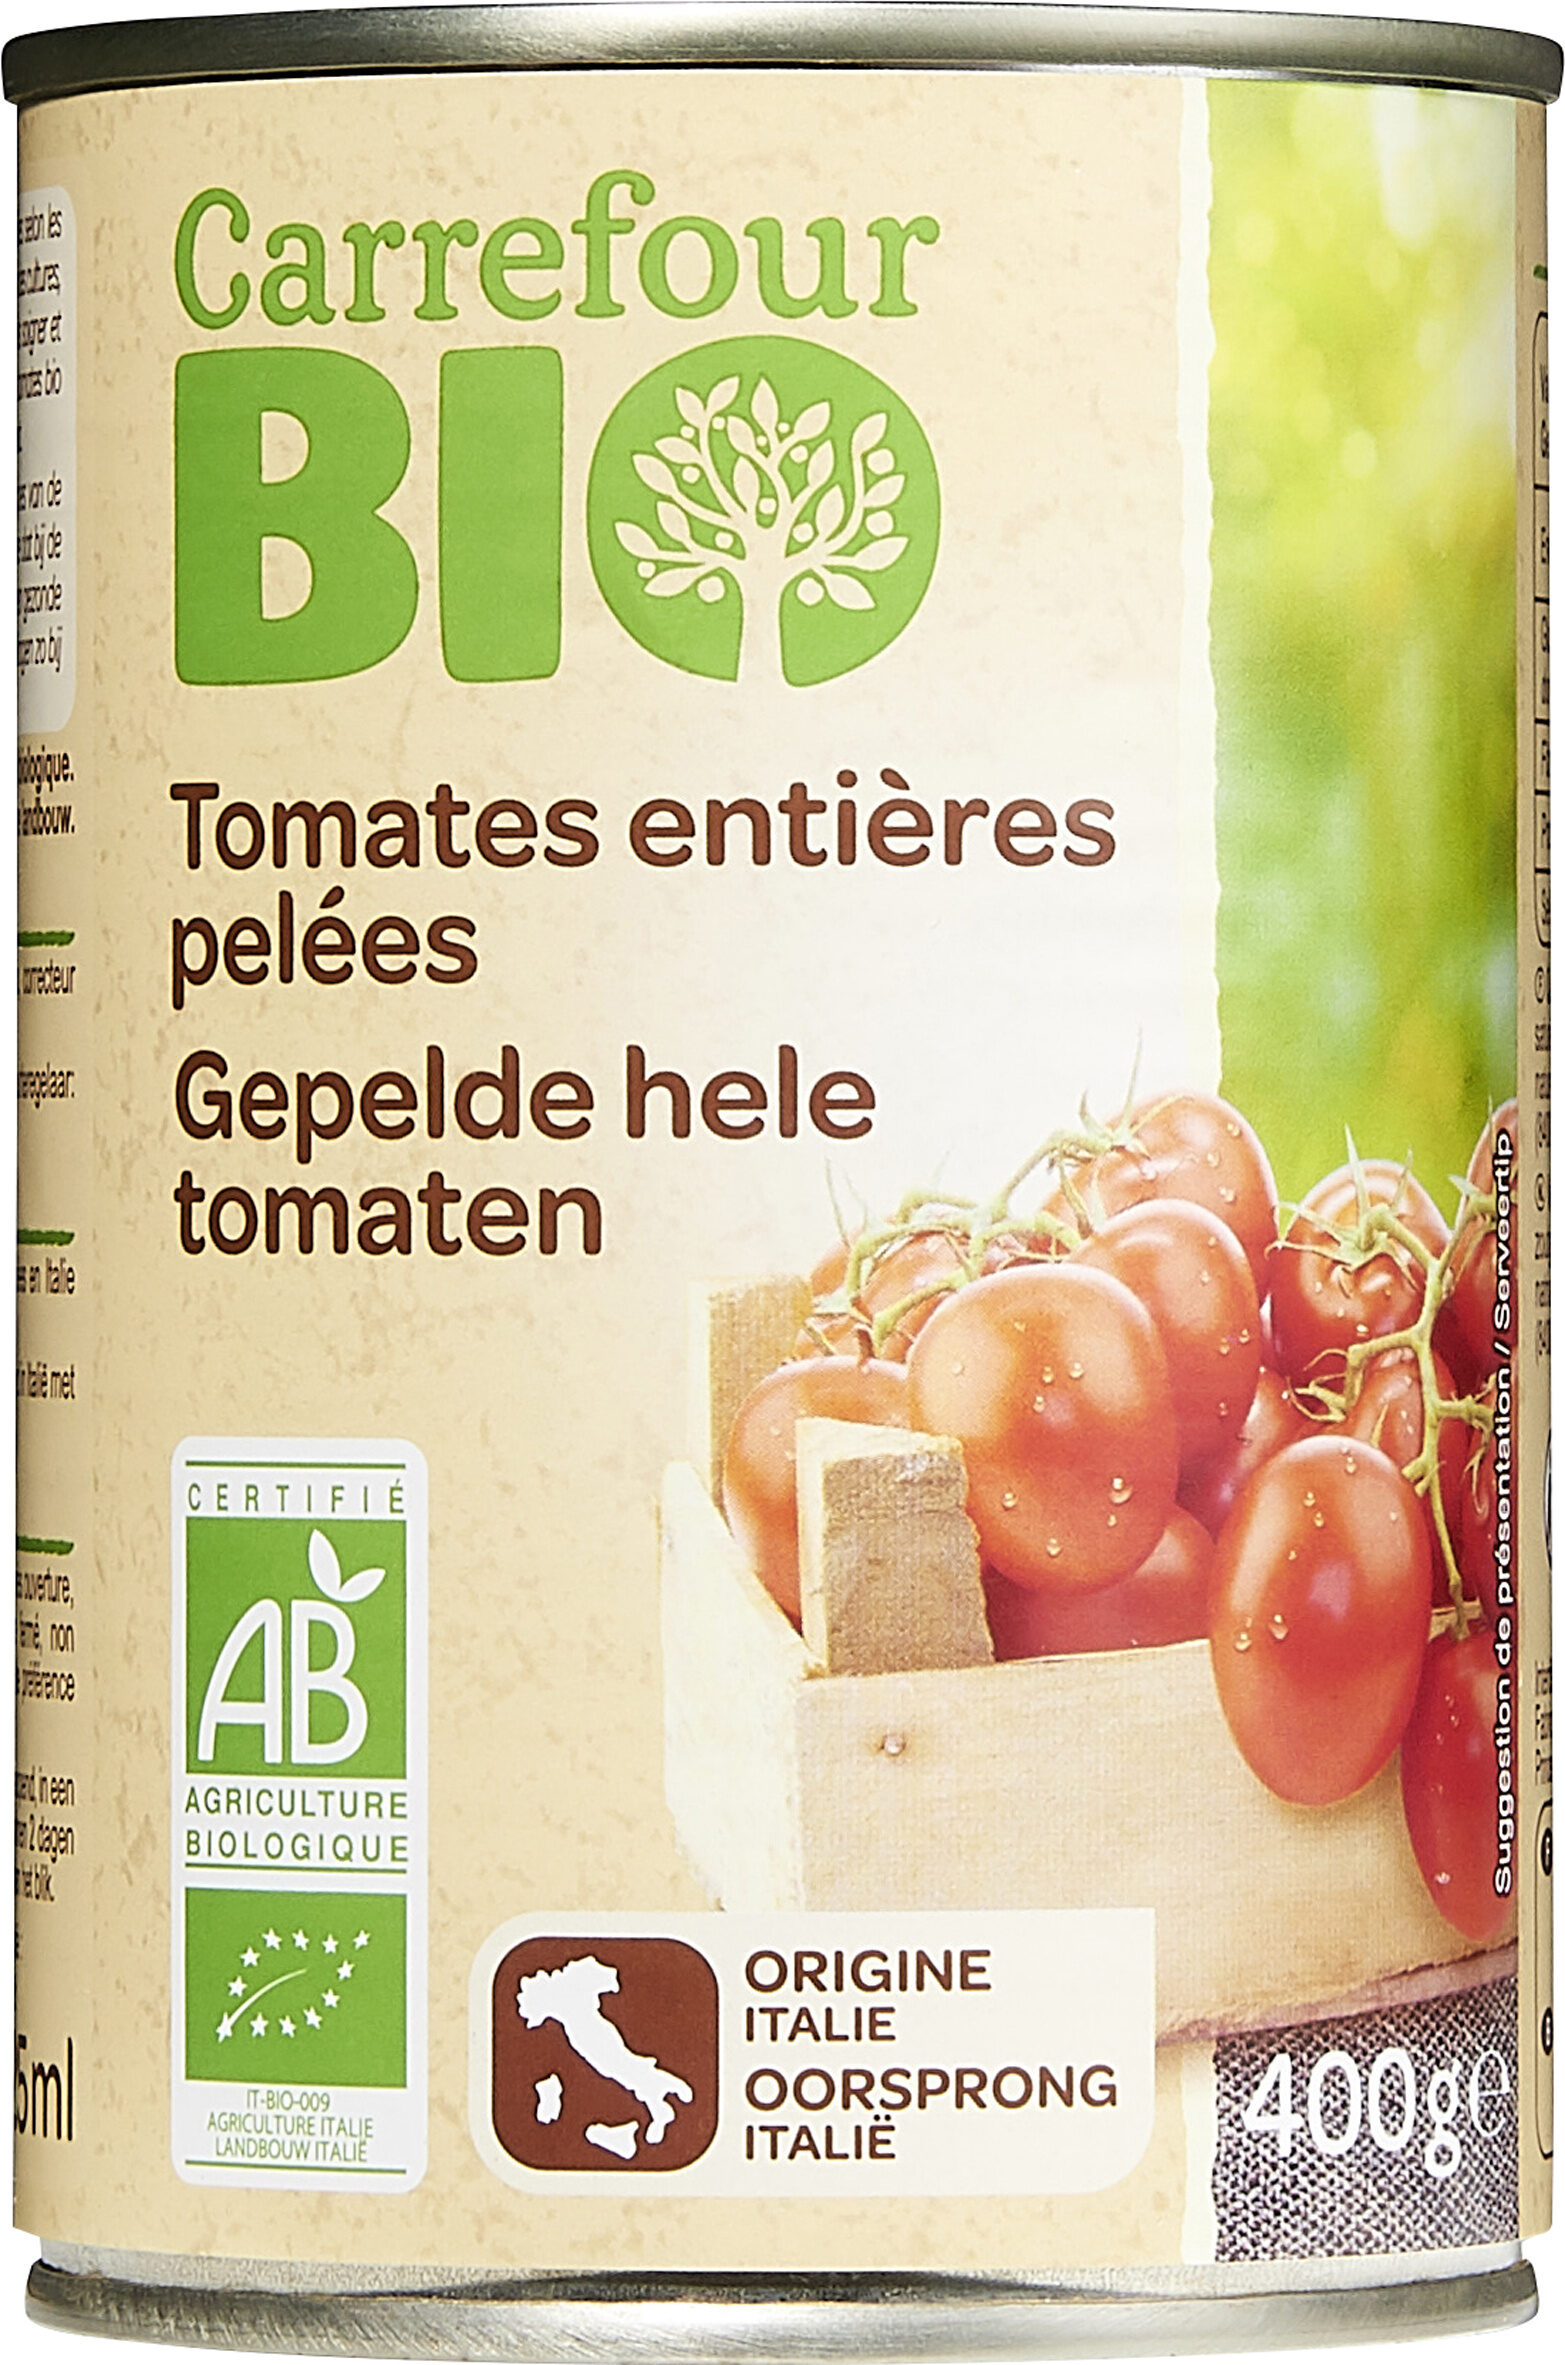 Tomates entières pelées - Producte - fr